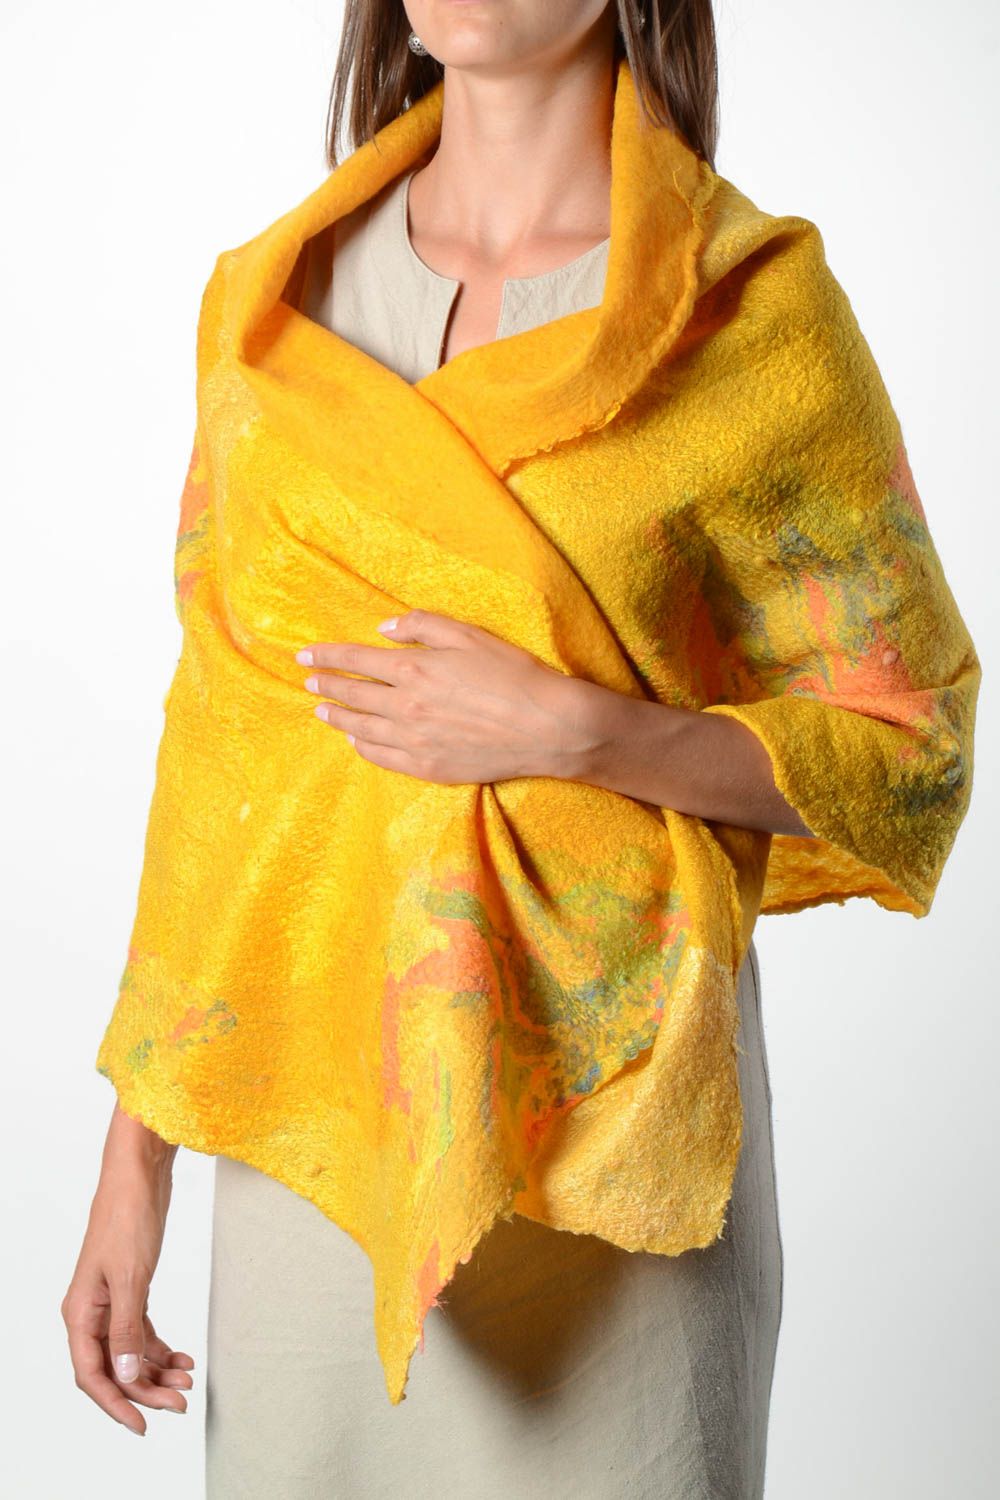 Châle femme fait main Accessoire laine jaune chaud Cadeau femme original photo 1